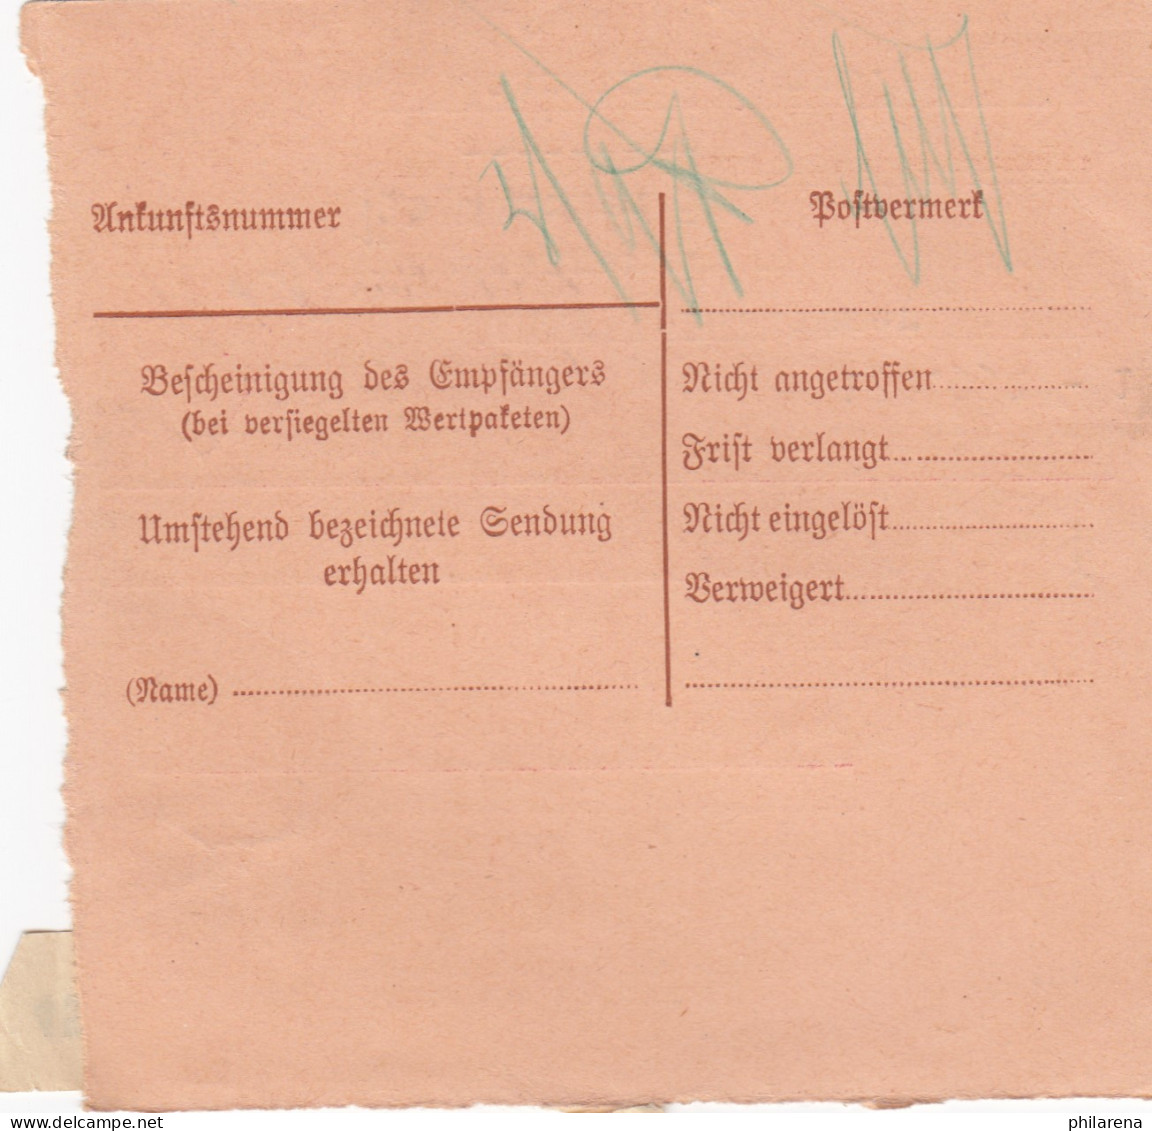 BiZone Paketkarte 1948: Weiden, Witt Nach München, Selbstbucher, Nachnahme - Brieven En Documenten